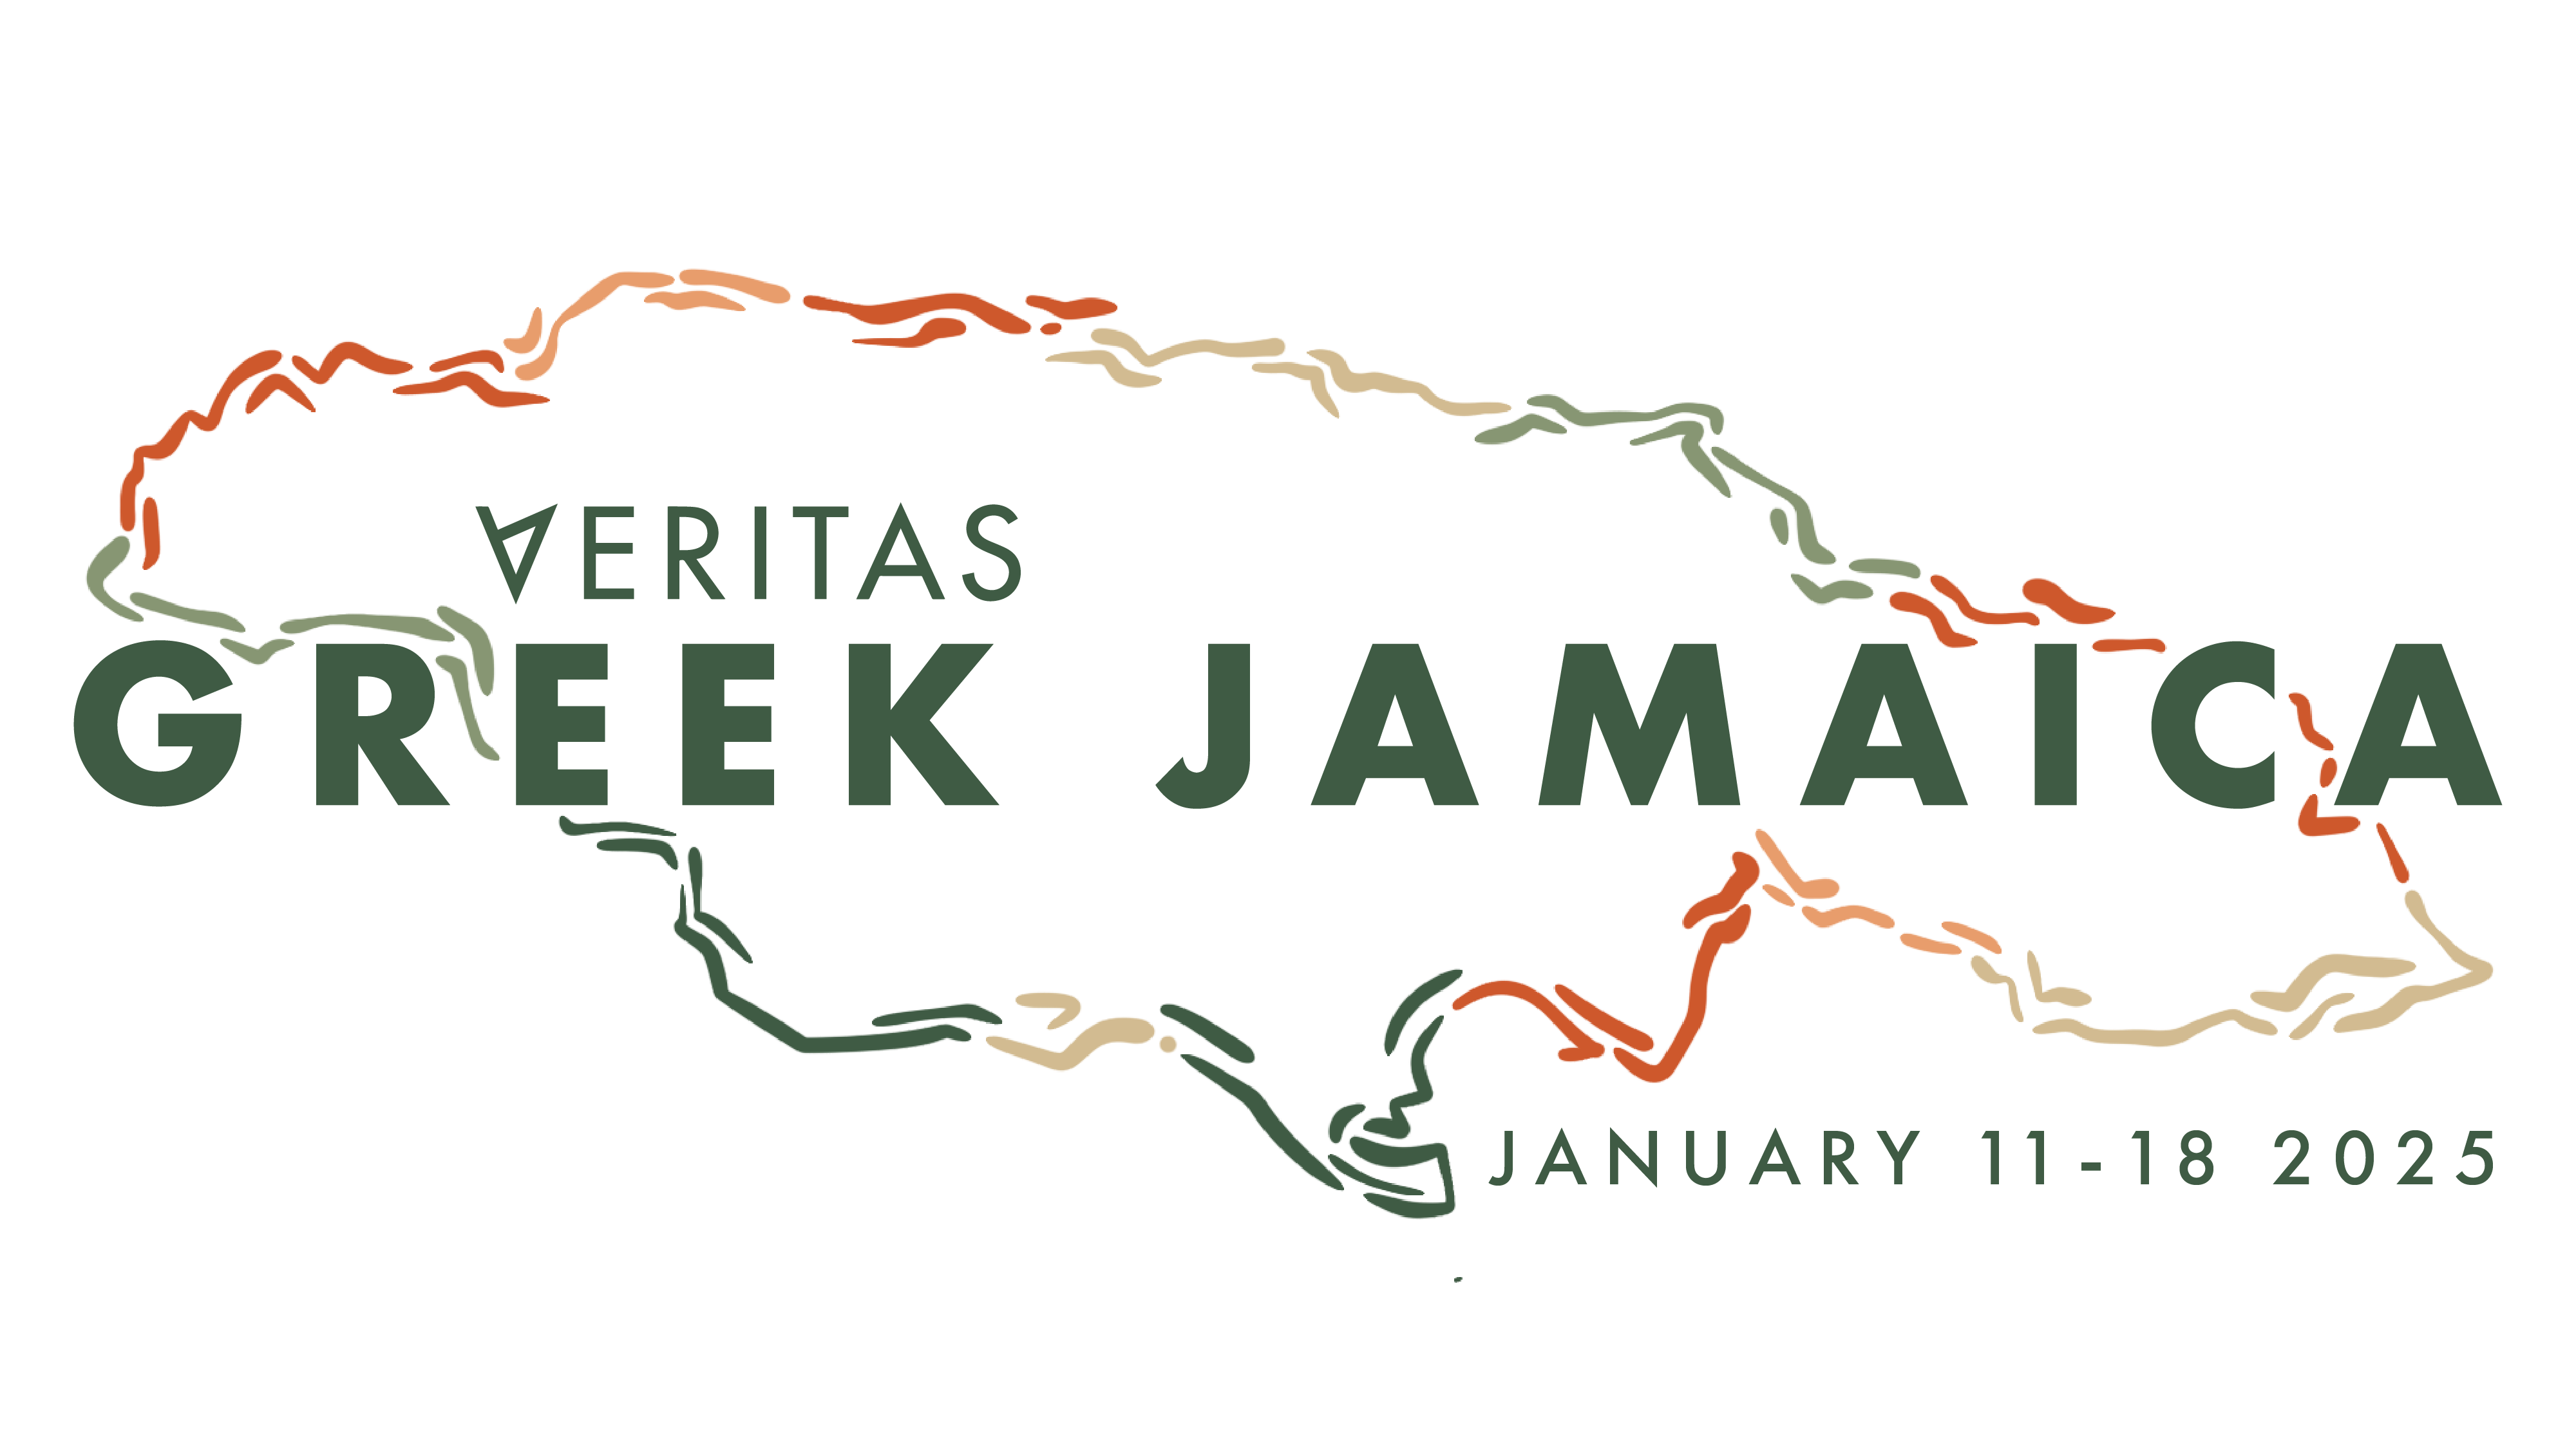 Veritas Greek Jamaica Trip